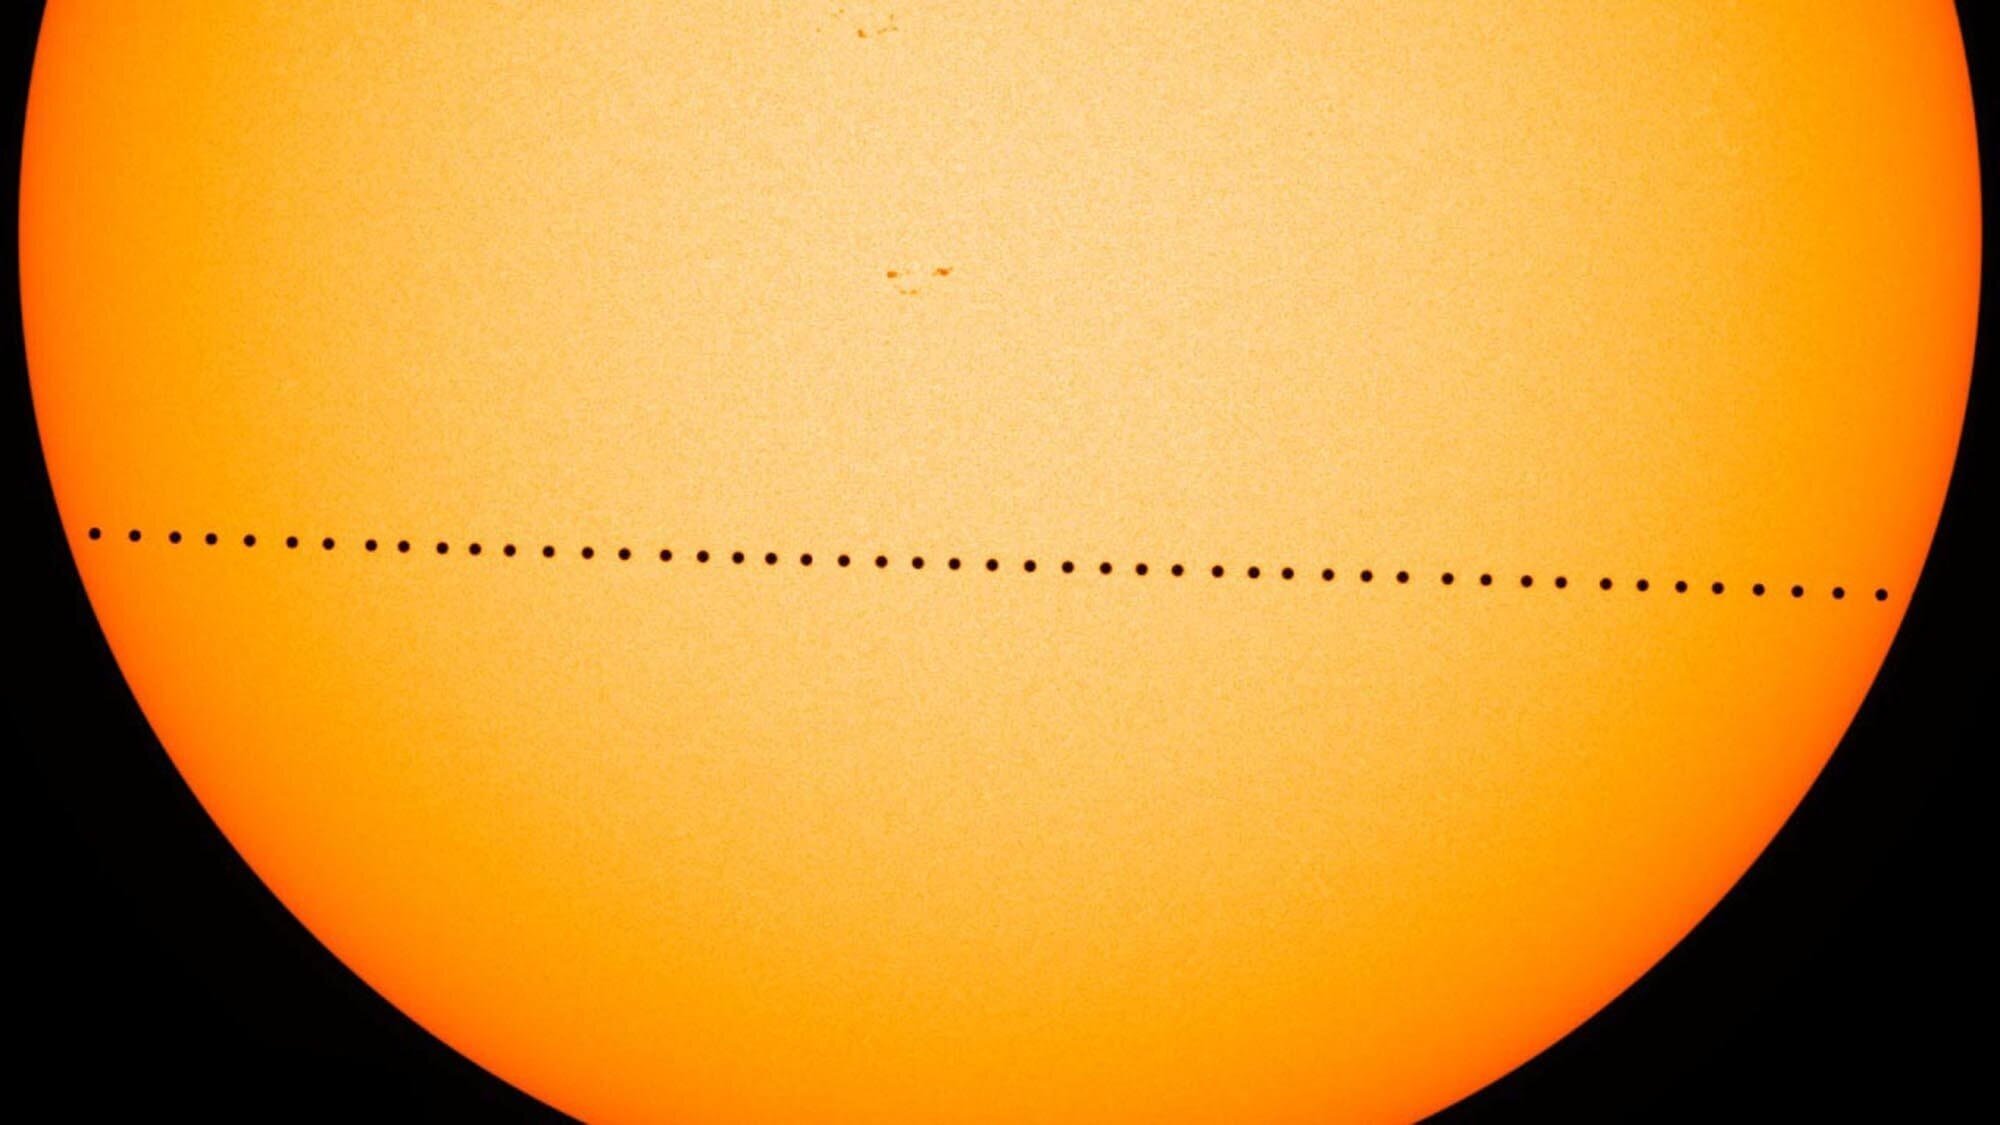 #Vídeo | Tudo que você precisa saber sobre o trânsito de Mercúrio pelo disco do Sol